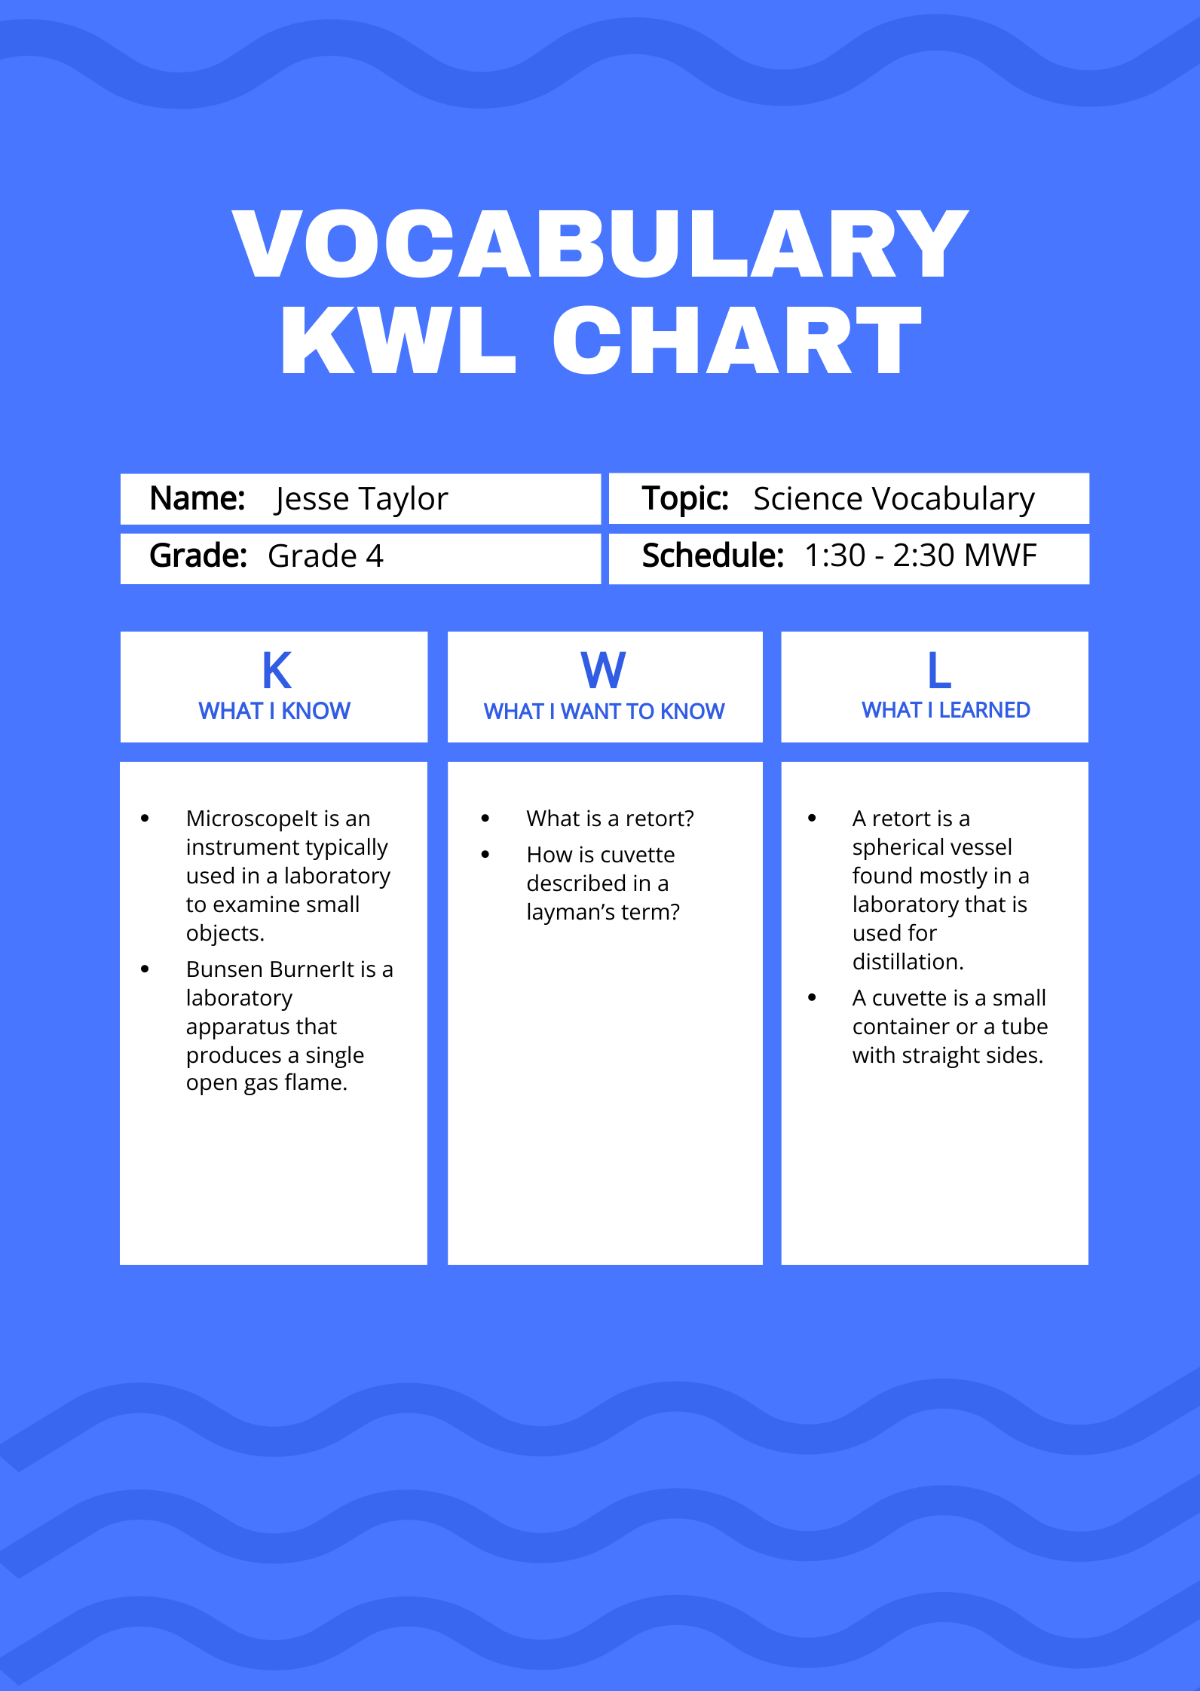 Vocabulary KWL Chart  Template